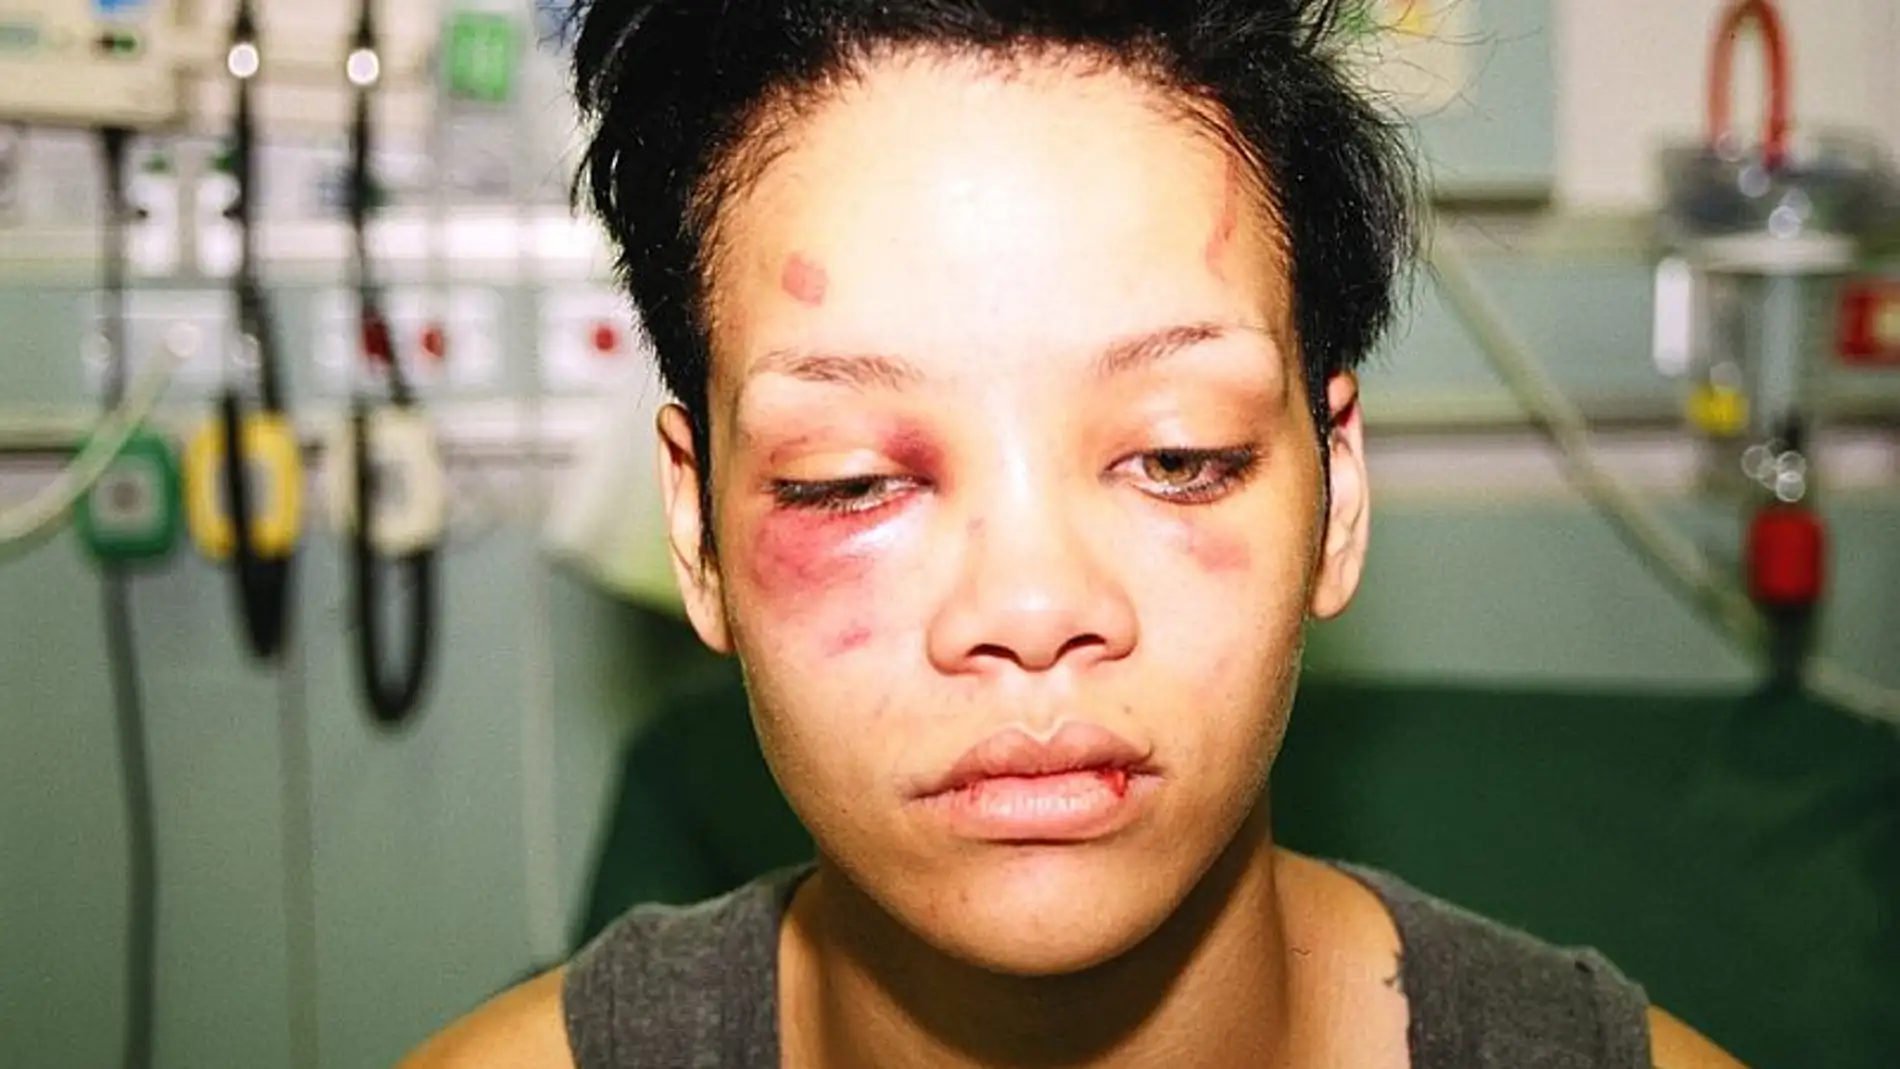 Rihanna agredida por Chris Brown